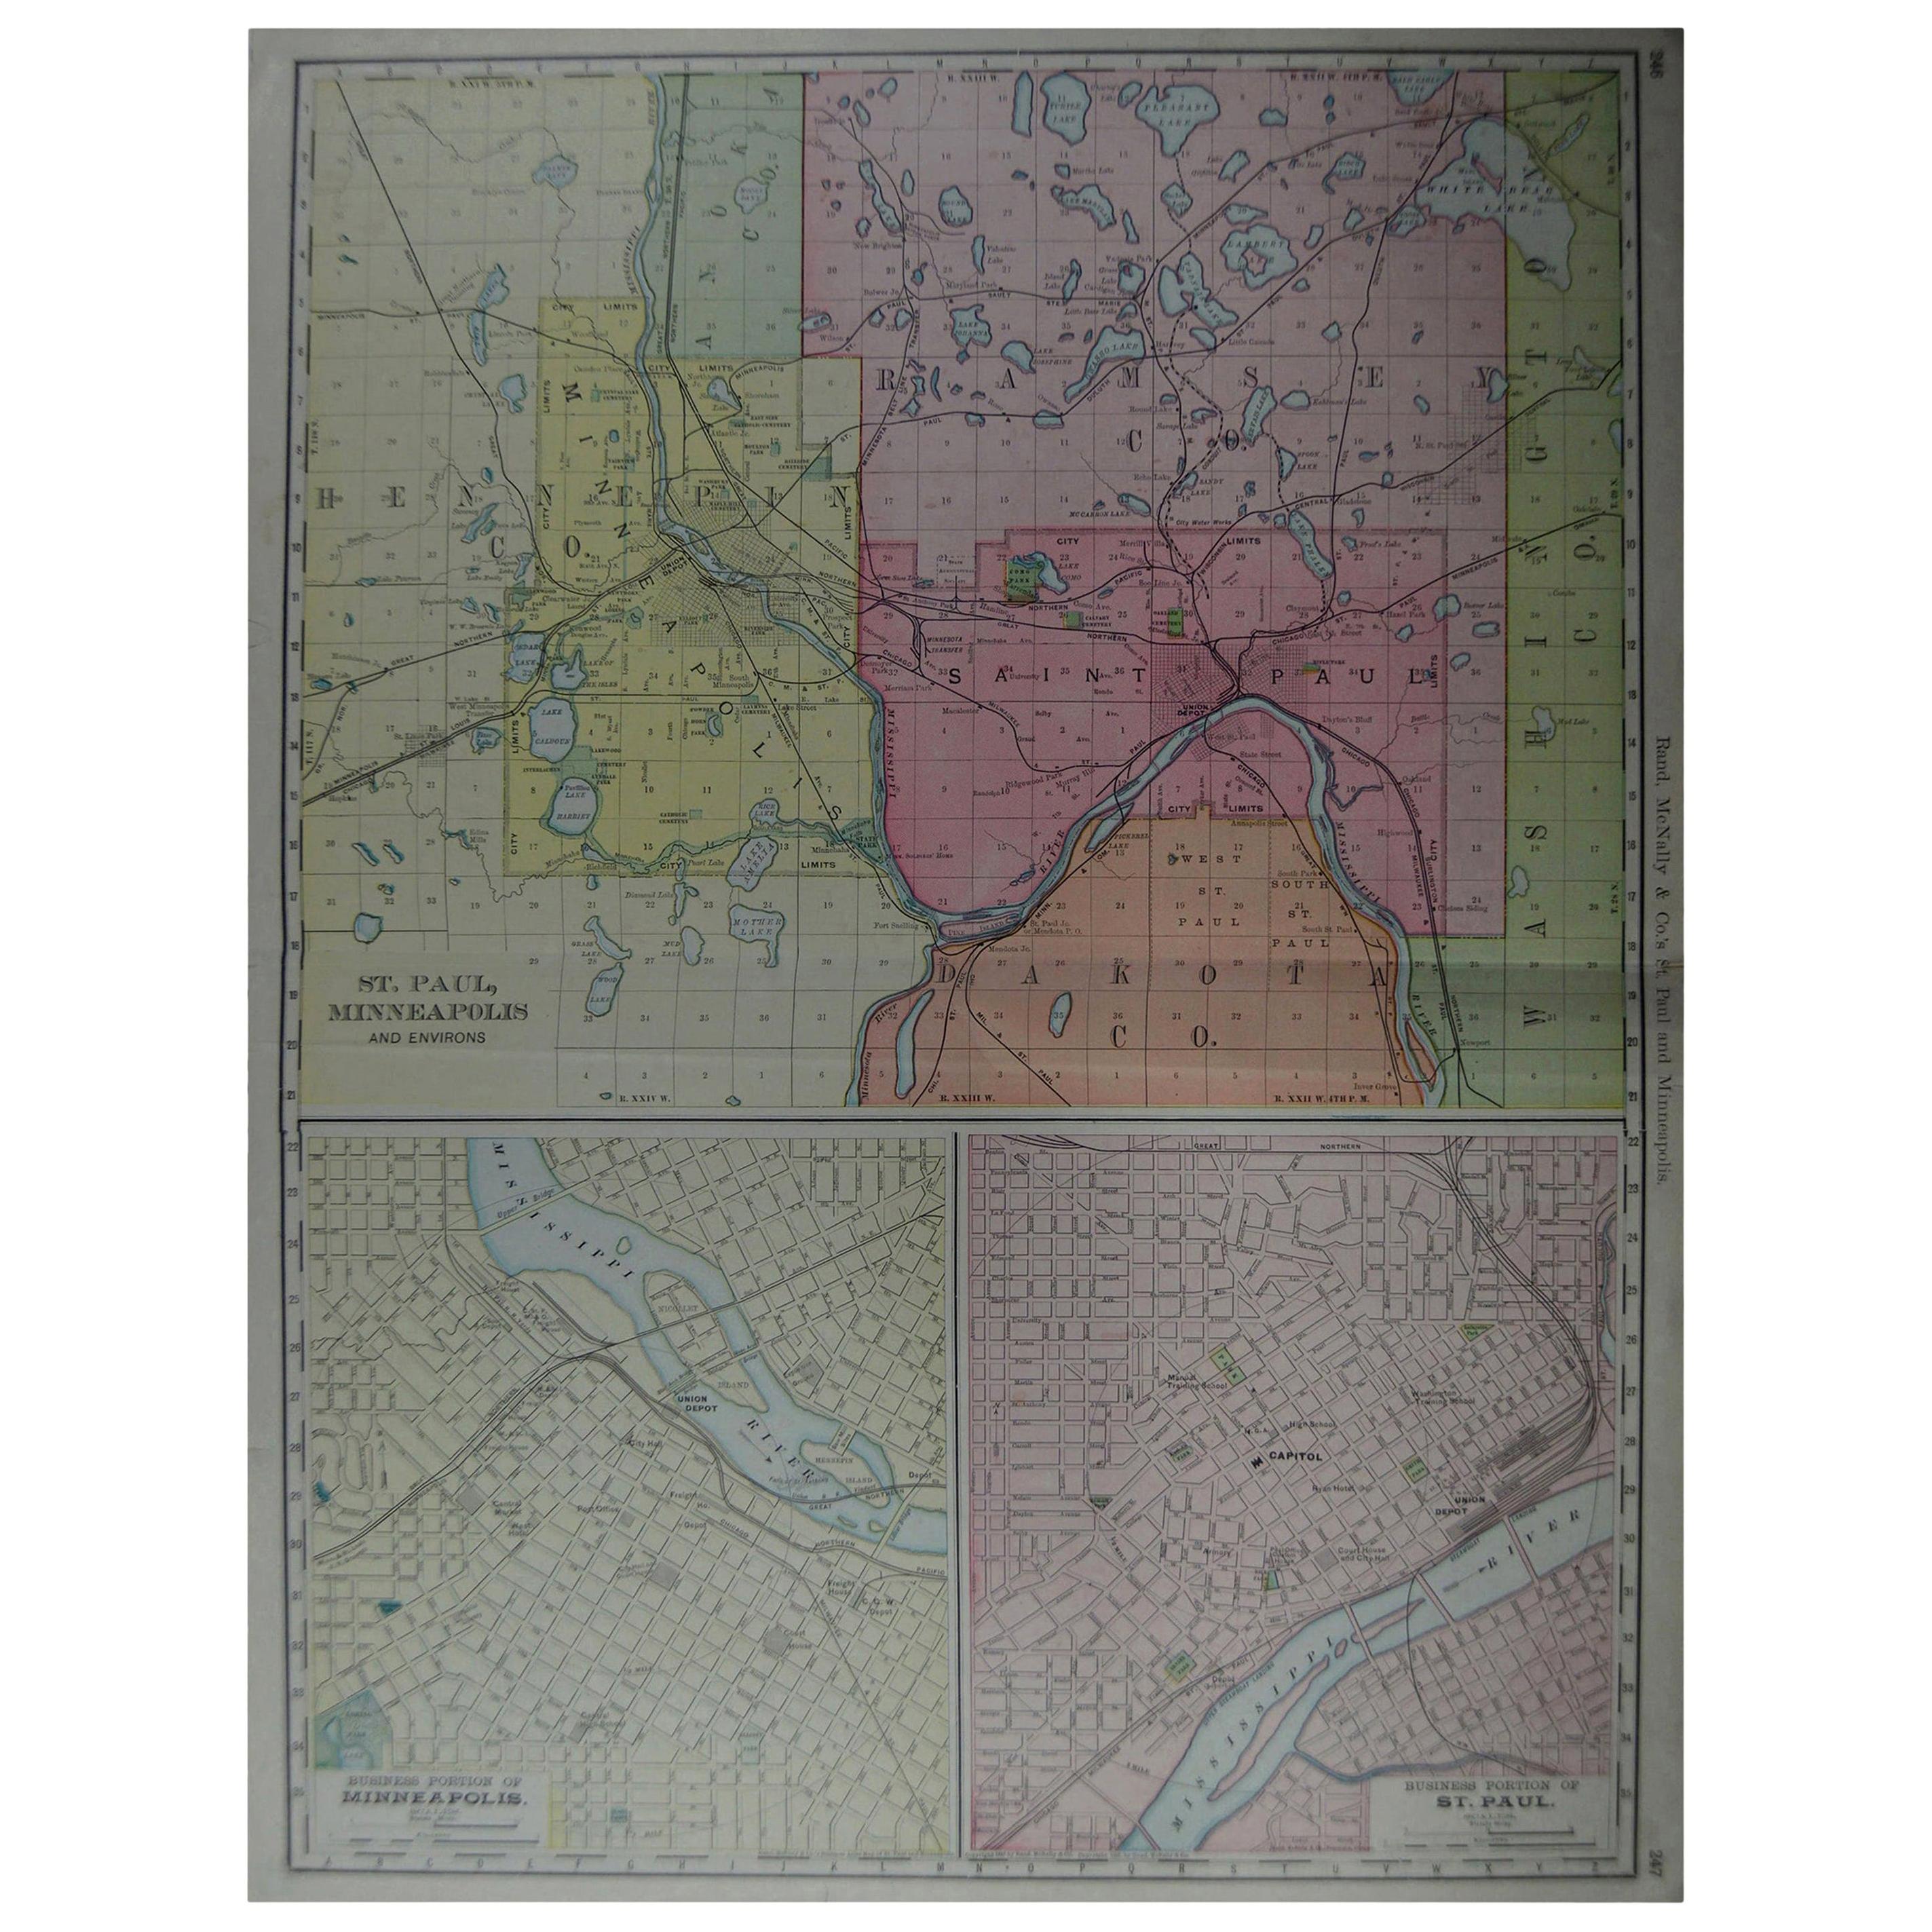 Großer originaler antiker Stadtplan von Minneapolis und St. Paul, USA, um 1900